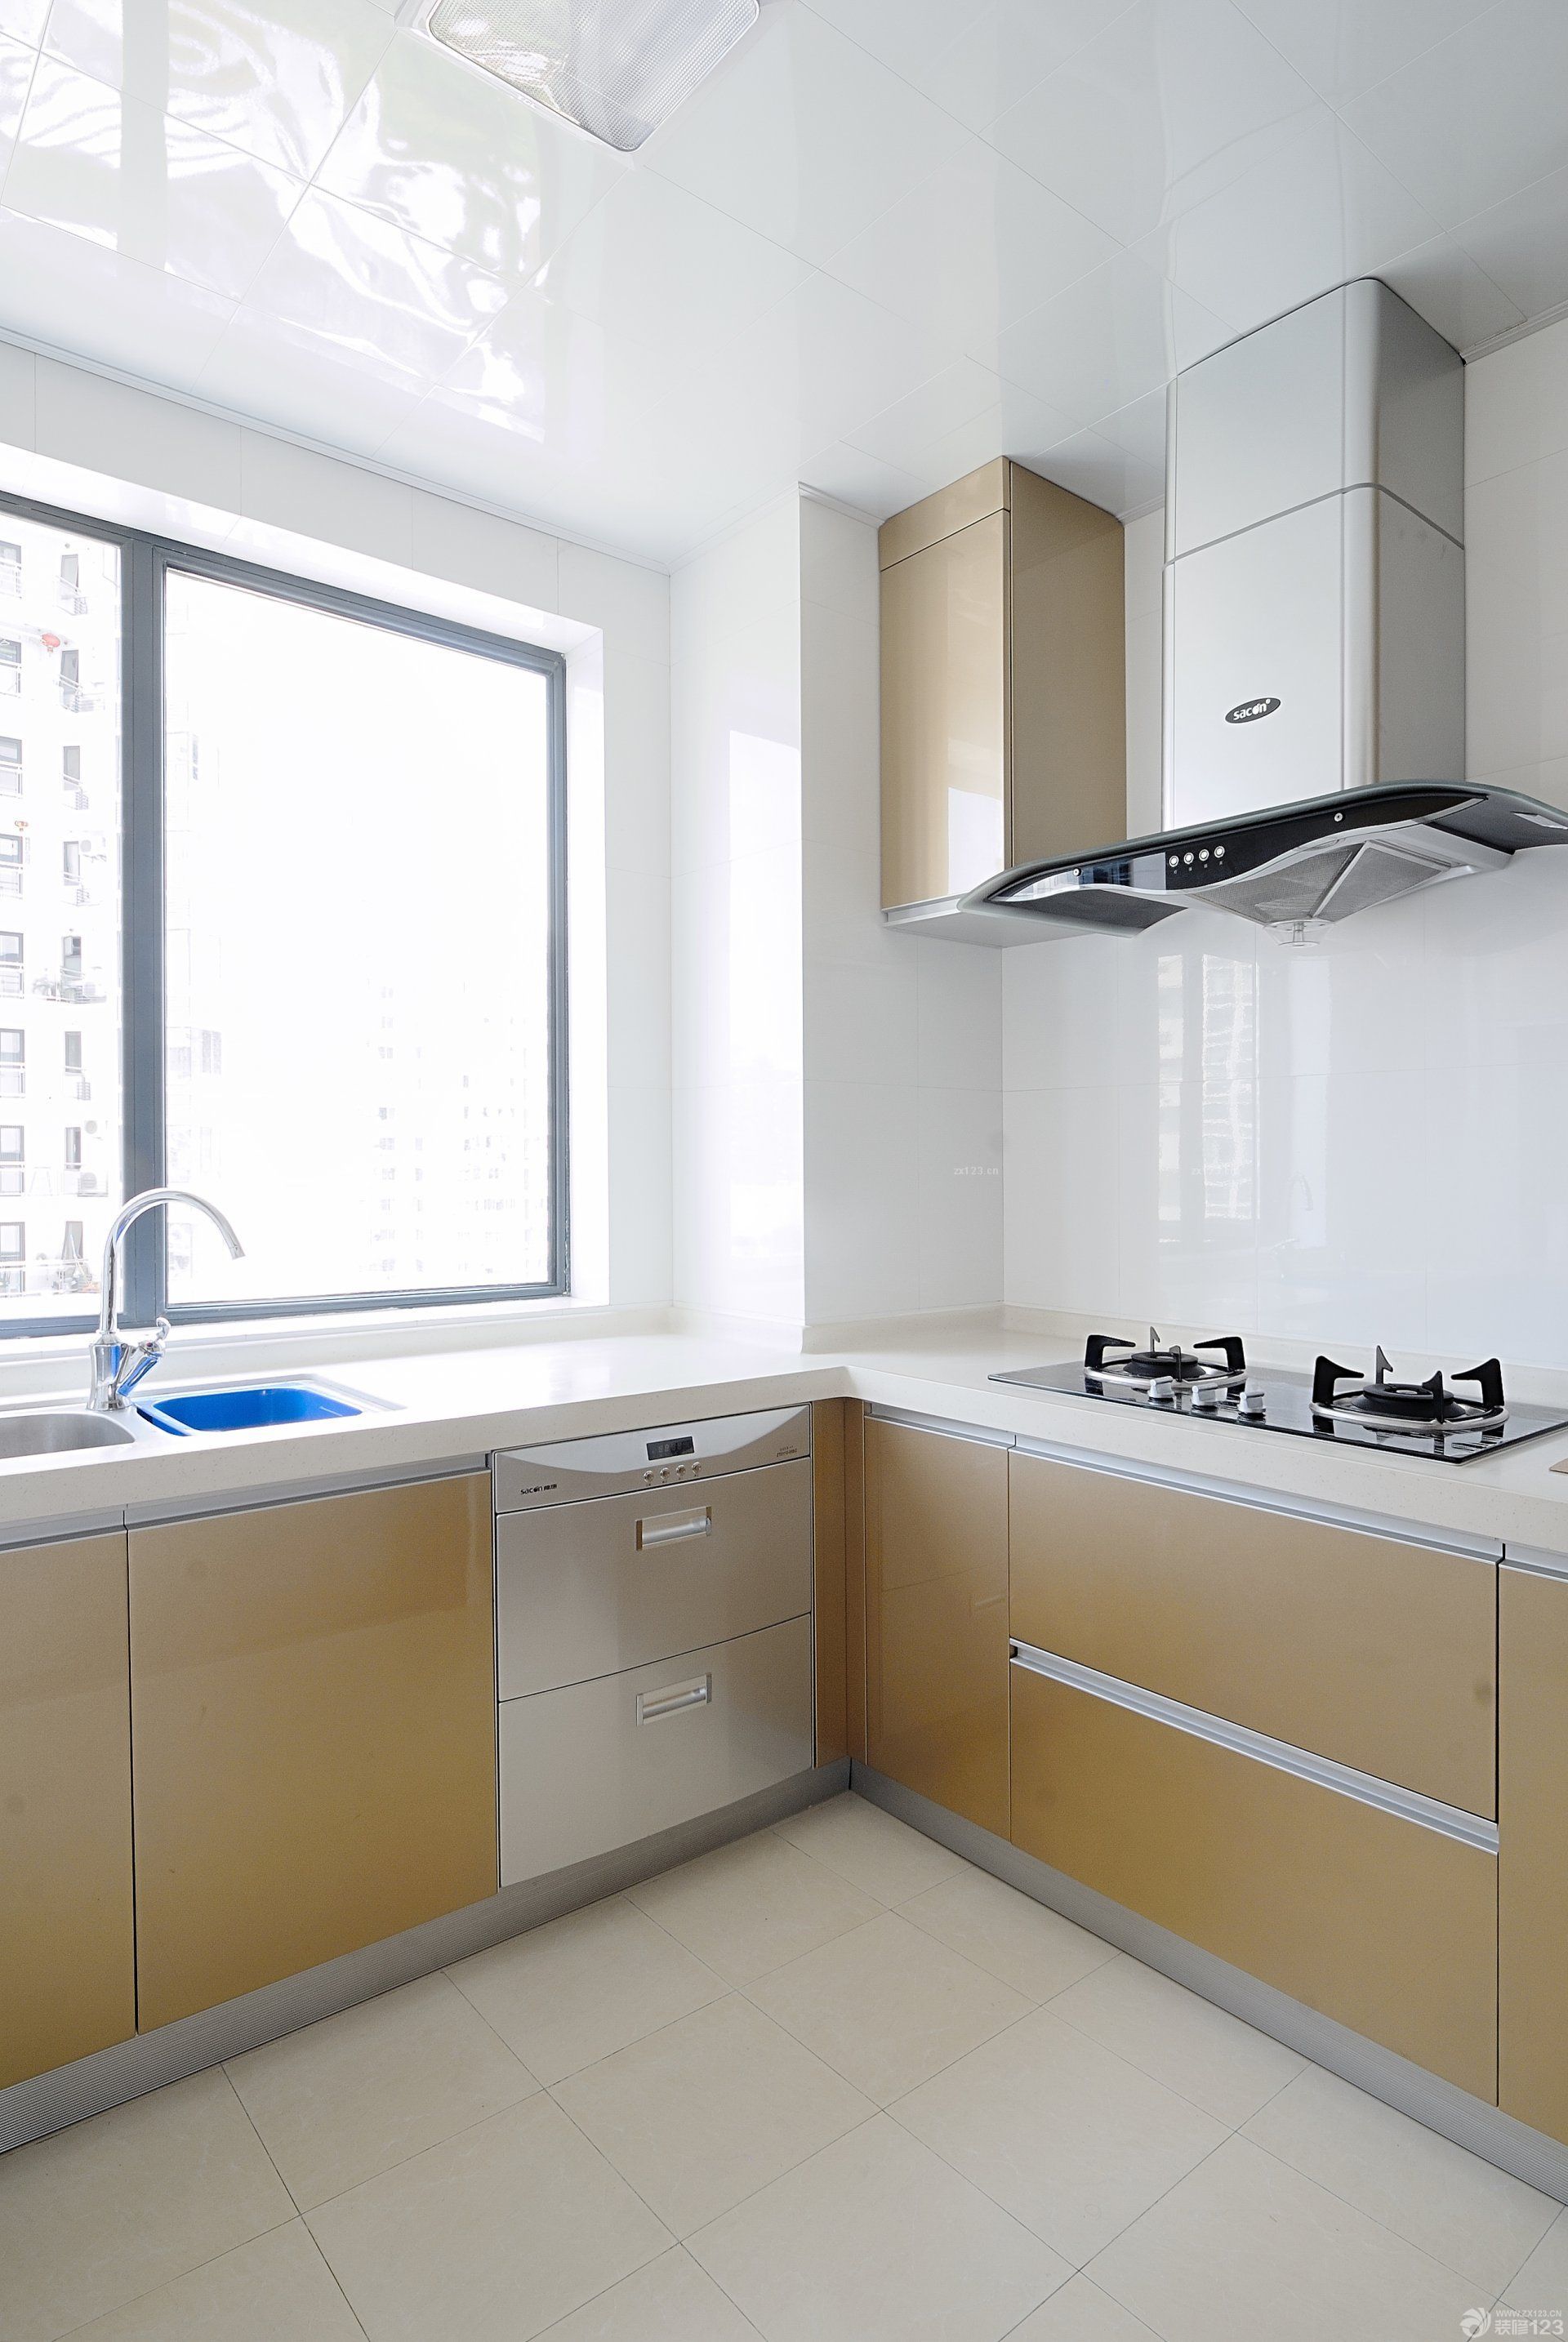 最新现代风格家居厨房铝扣板集成吊顶图片大全